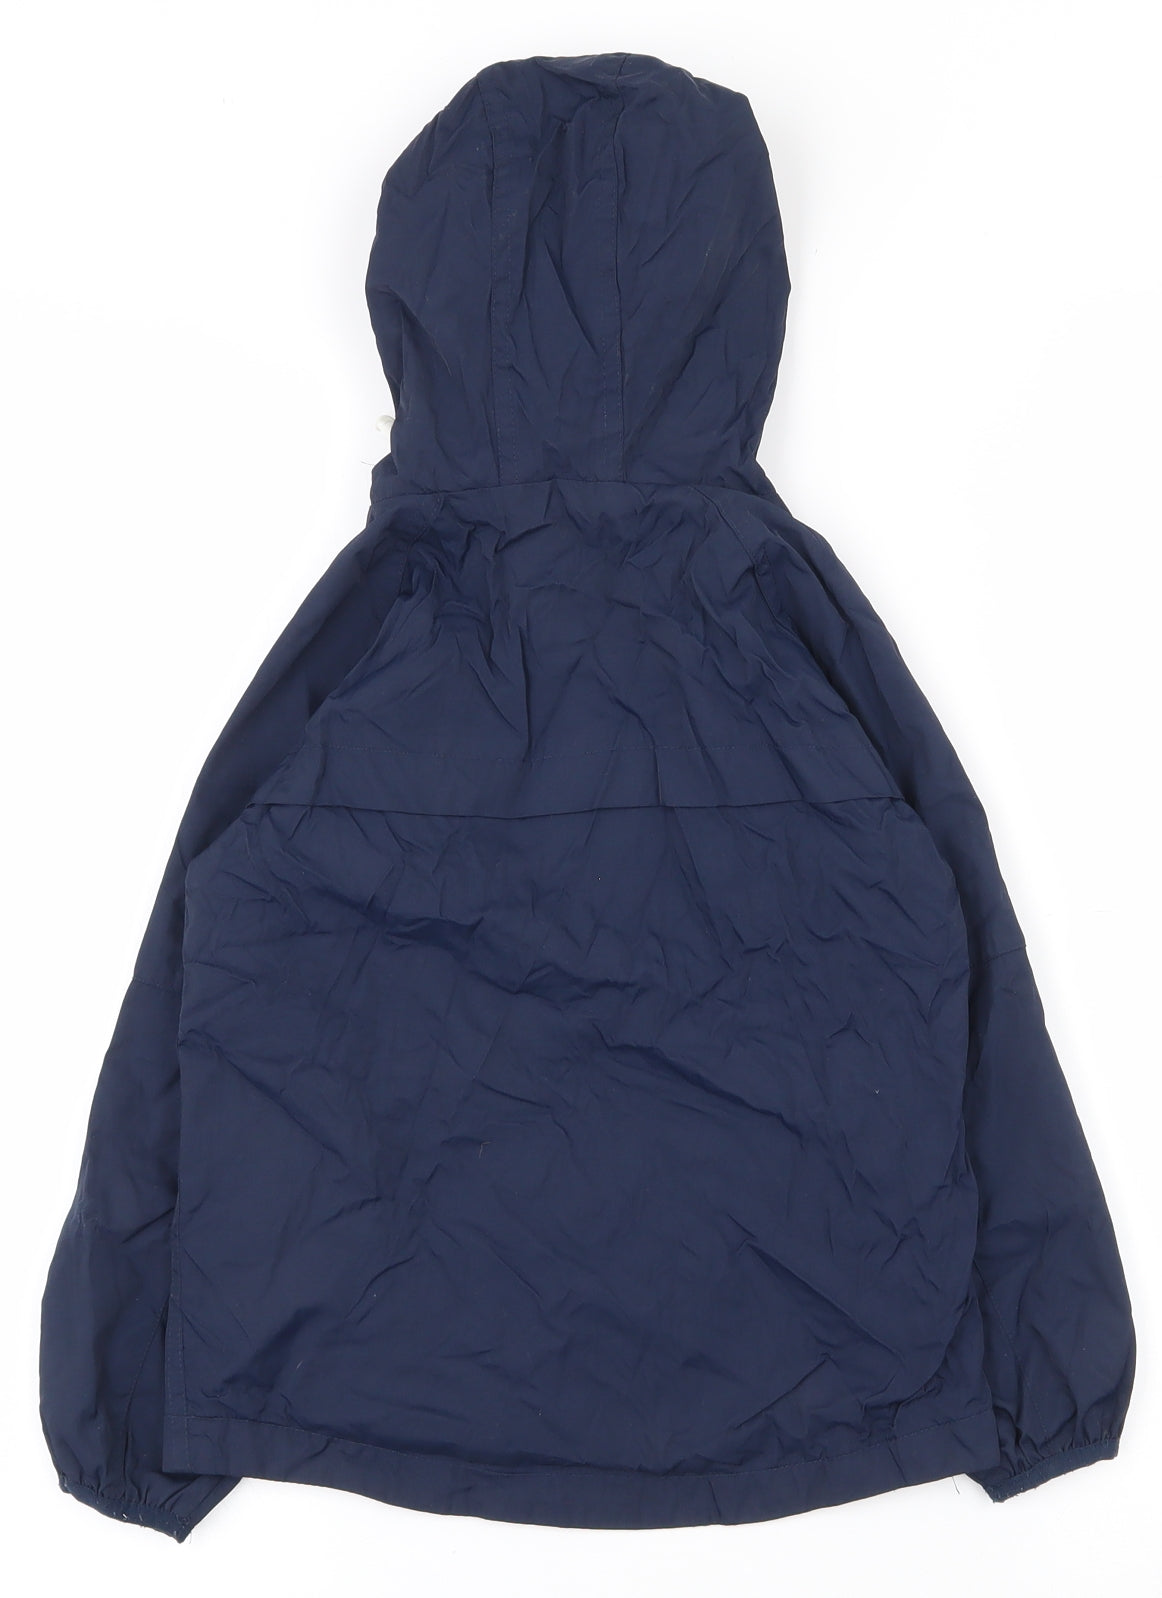 NEXT Boys Blue   Rain Coat Coat Size 4 Years  Zip